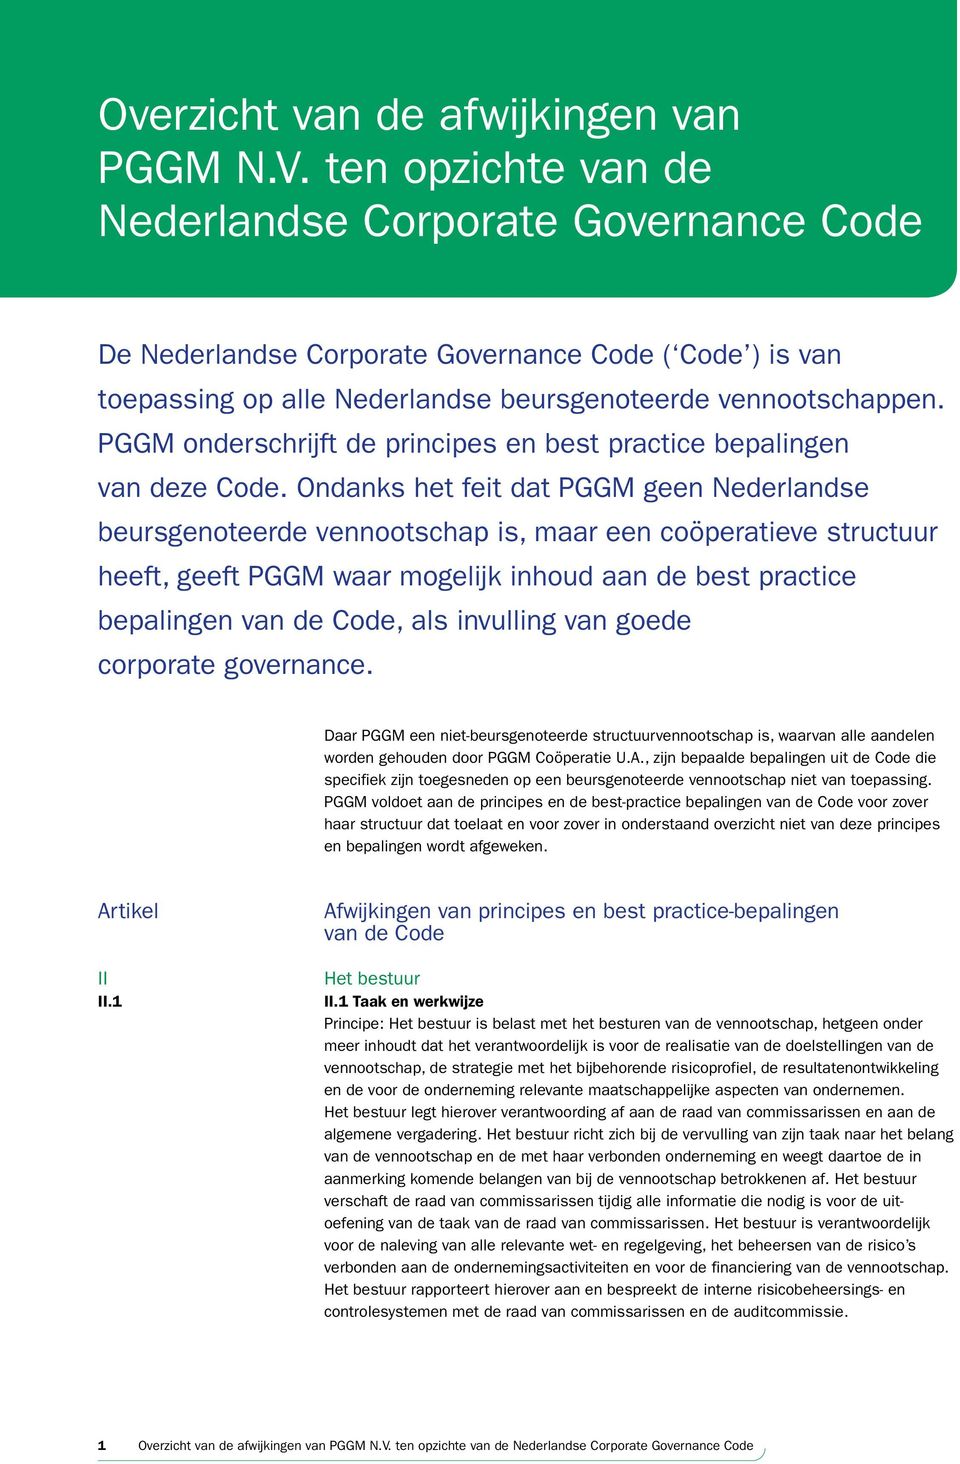 PGGM onderschrijft de principes en best practice bepalingen van deze Code.